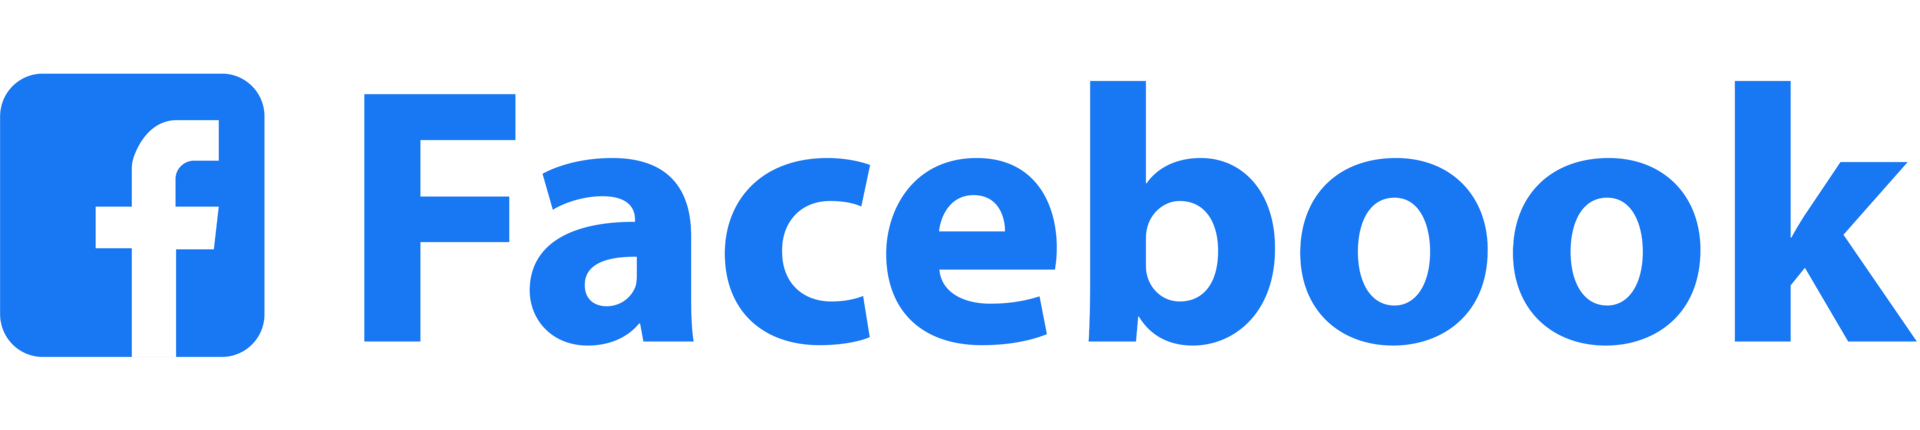 Facebook logotipos, sitios web, y aplicaciones popular en línea social medios de comunicación png